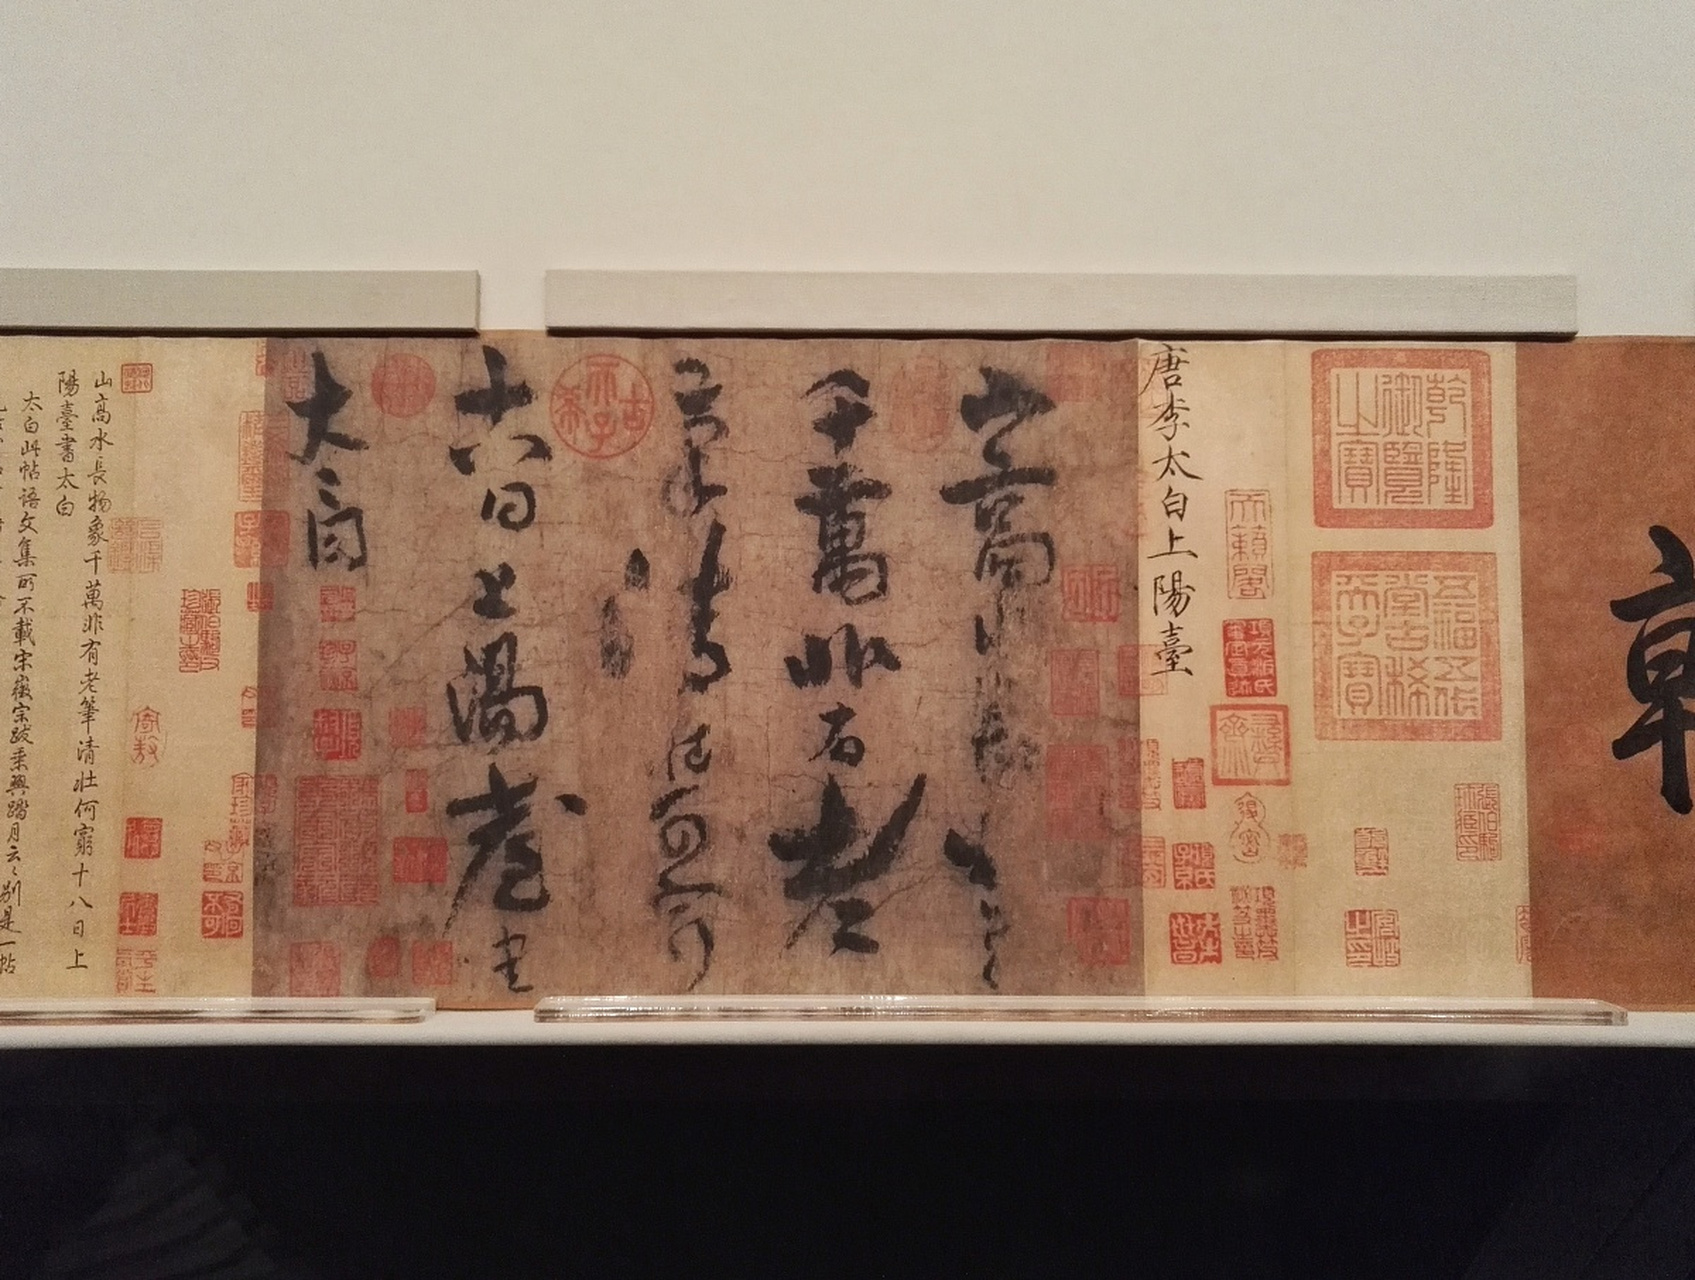 《上阳台帖》是李白唯一传世的书法真迹,现收藏于北京故宫博物院.